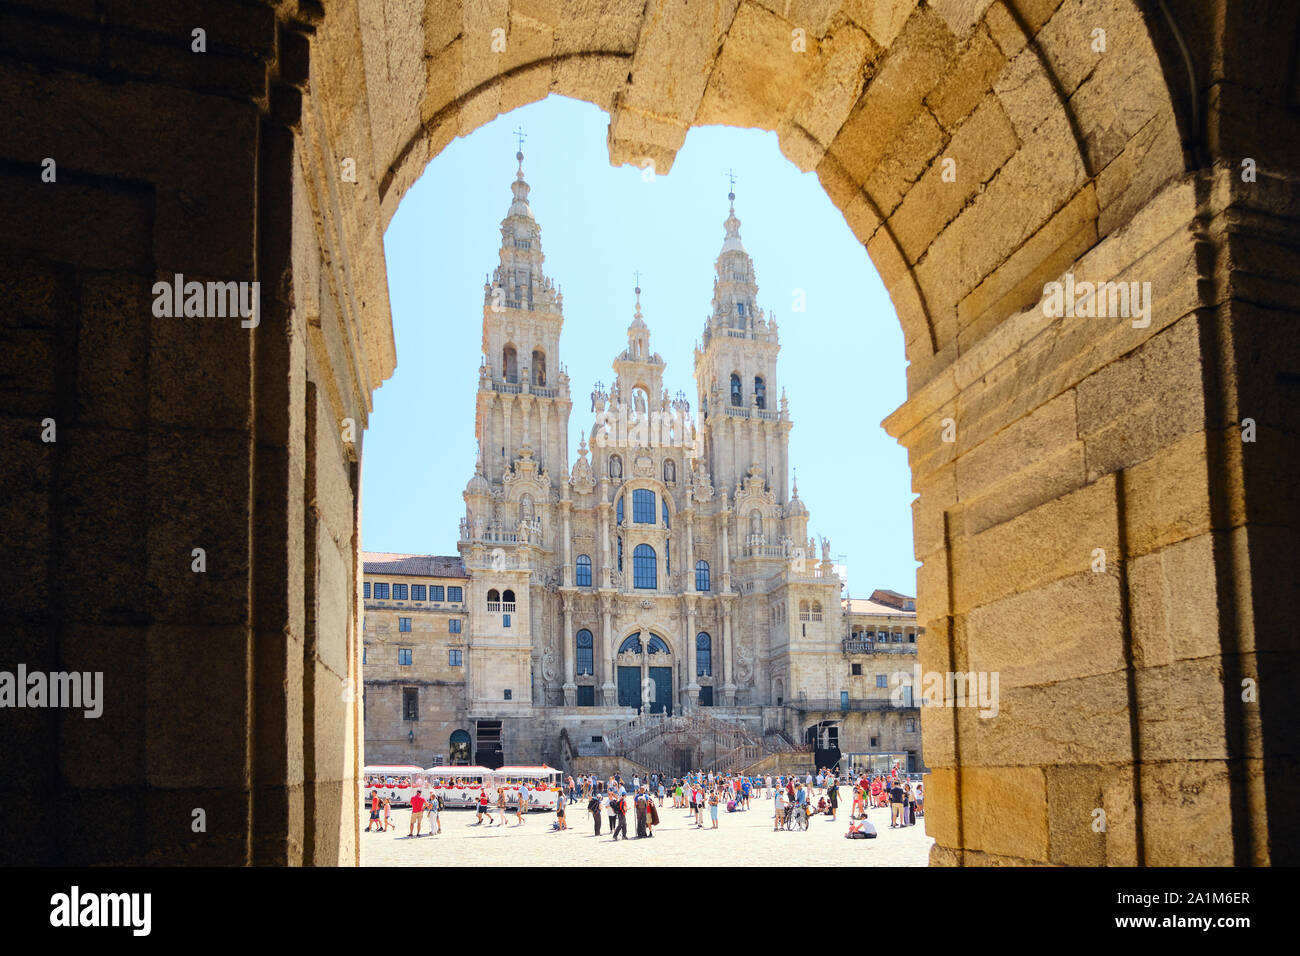 SANTIAGO DE COMPOSTELA, España - Julio 2019: turistas y peregrinos, cerca de la Catedral de Santiago de Compostela, famosa ciudad española a finales de Camín Foto de stock